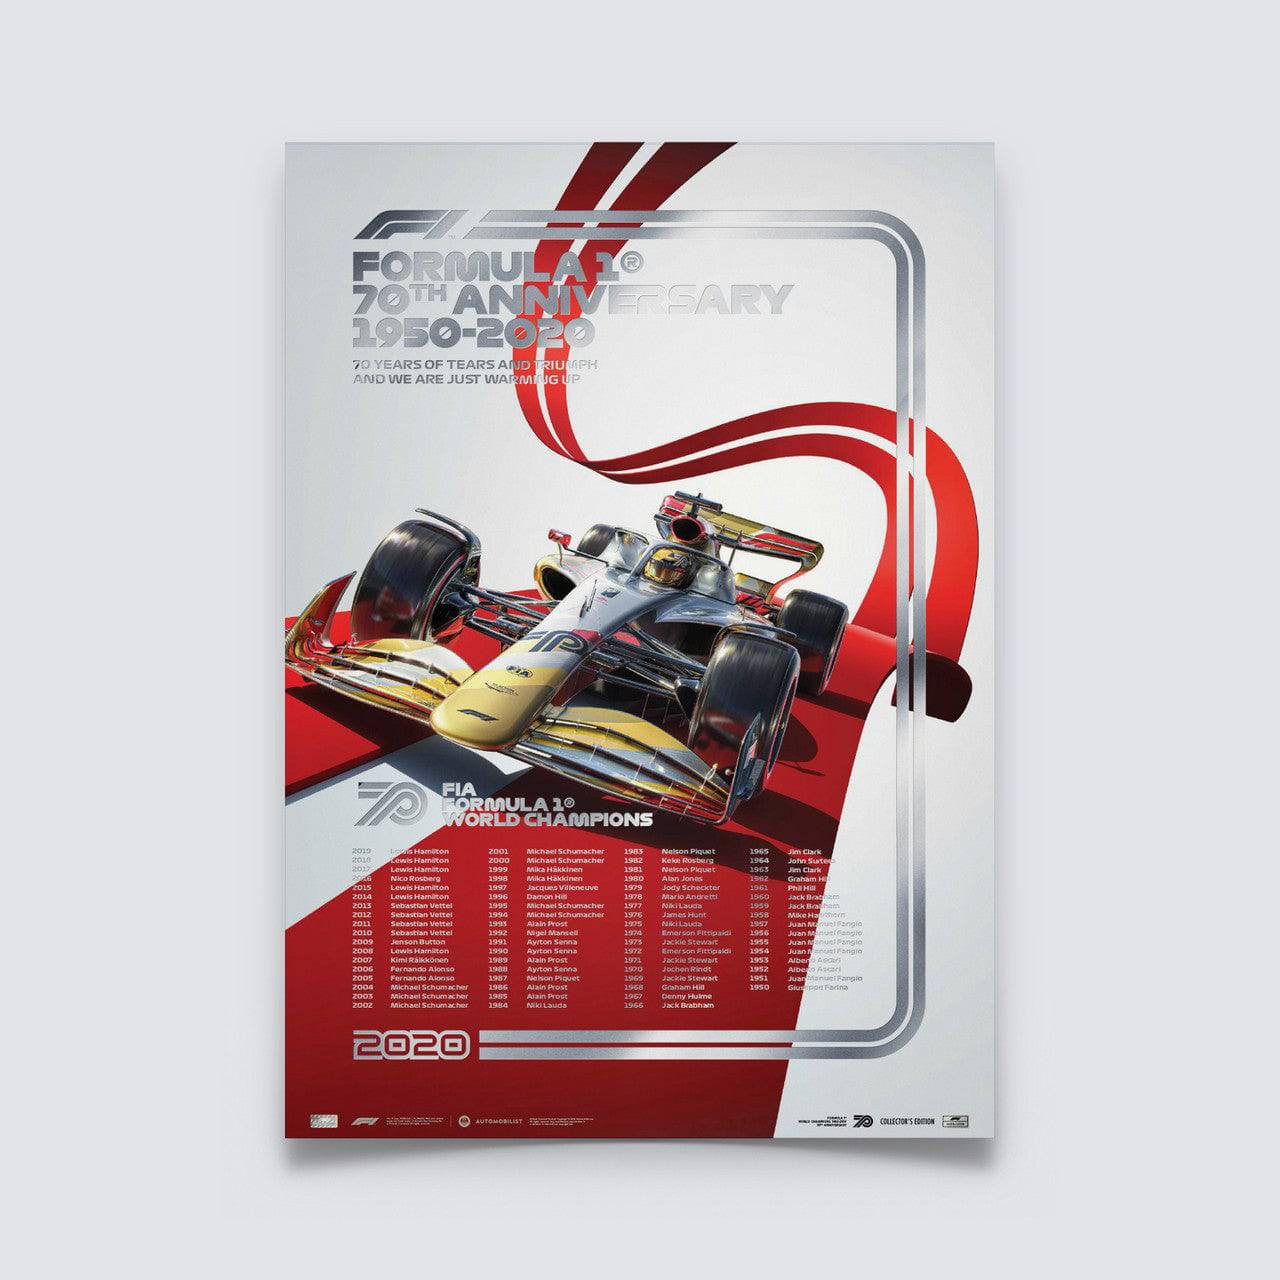 FIA FORMULA 1® WORLD CHAMPIONS 1950-2019 - 70TH ANNIVERSARY | Collector's Edition SILVER